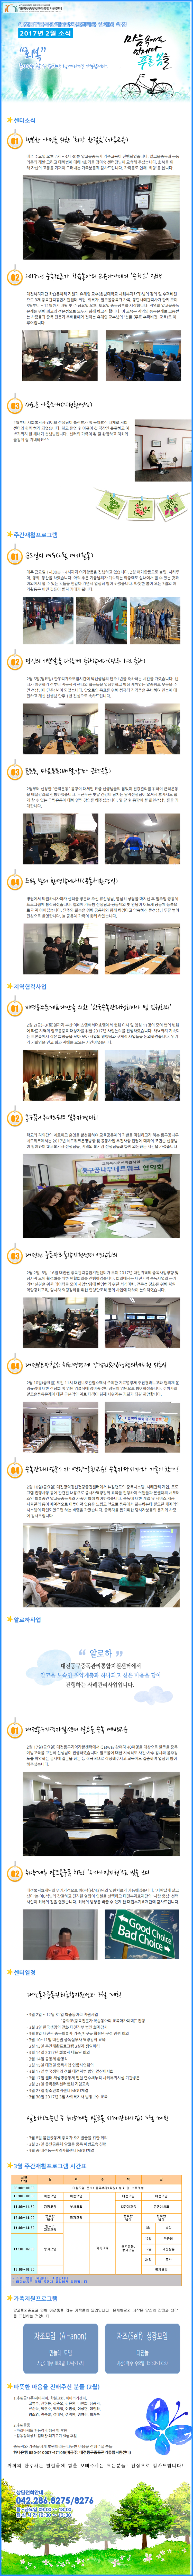 대전동구중독관리통합지원센터 2017년 2월 뉴스레터입니다.